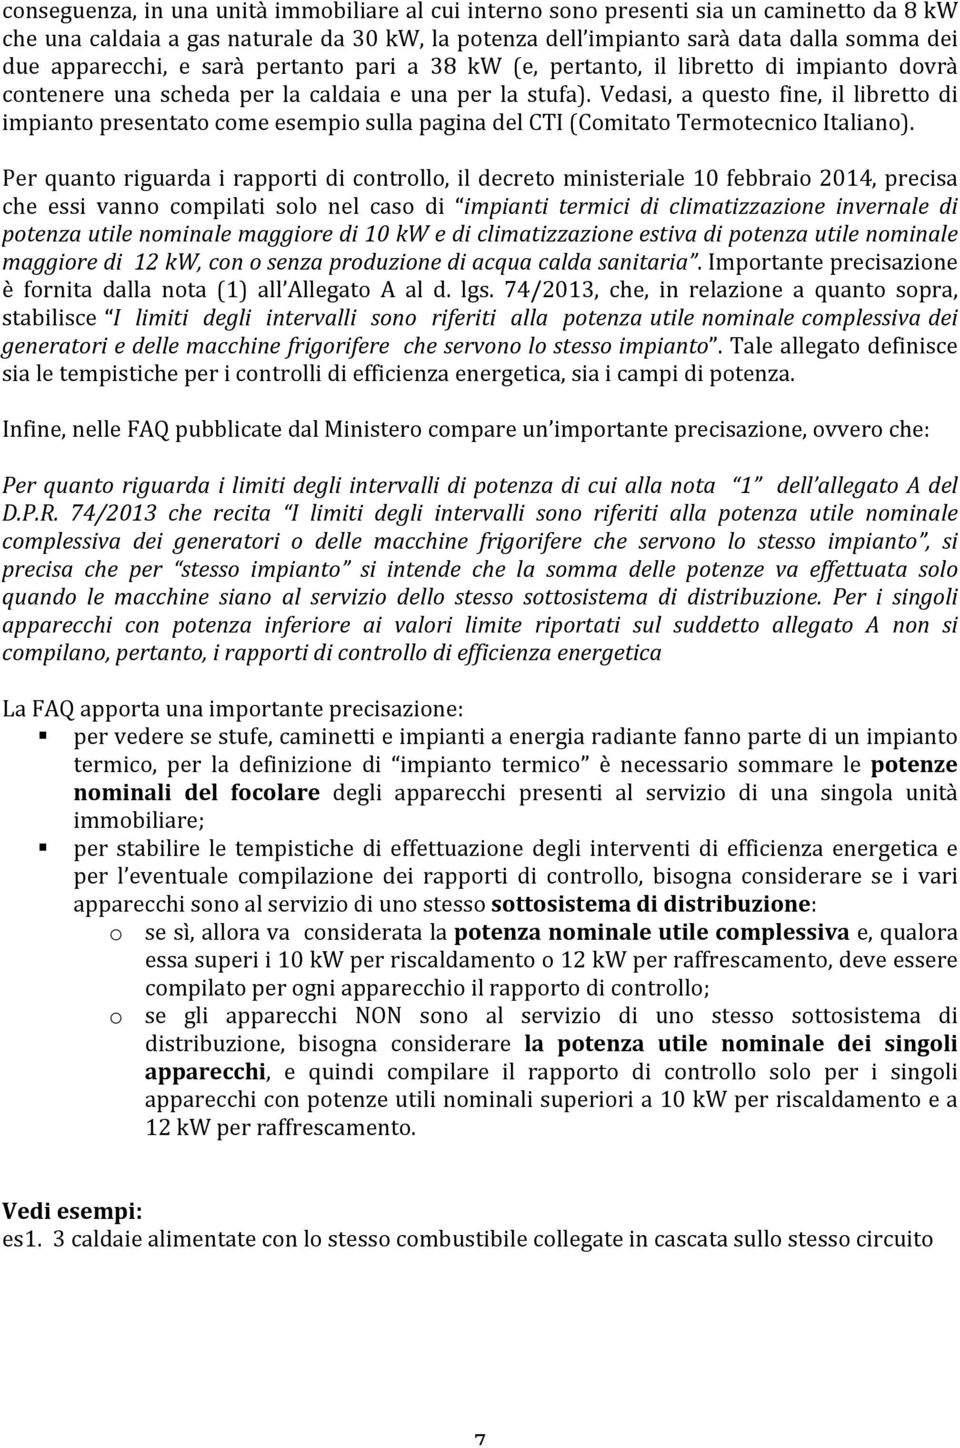 Vedasi, a questo fine, il libretto di impianto presentato come esempio sulla pagina del CTI (Comitato Termotecnico Italiano).